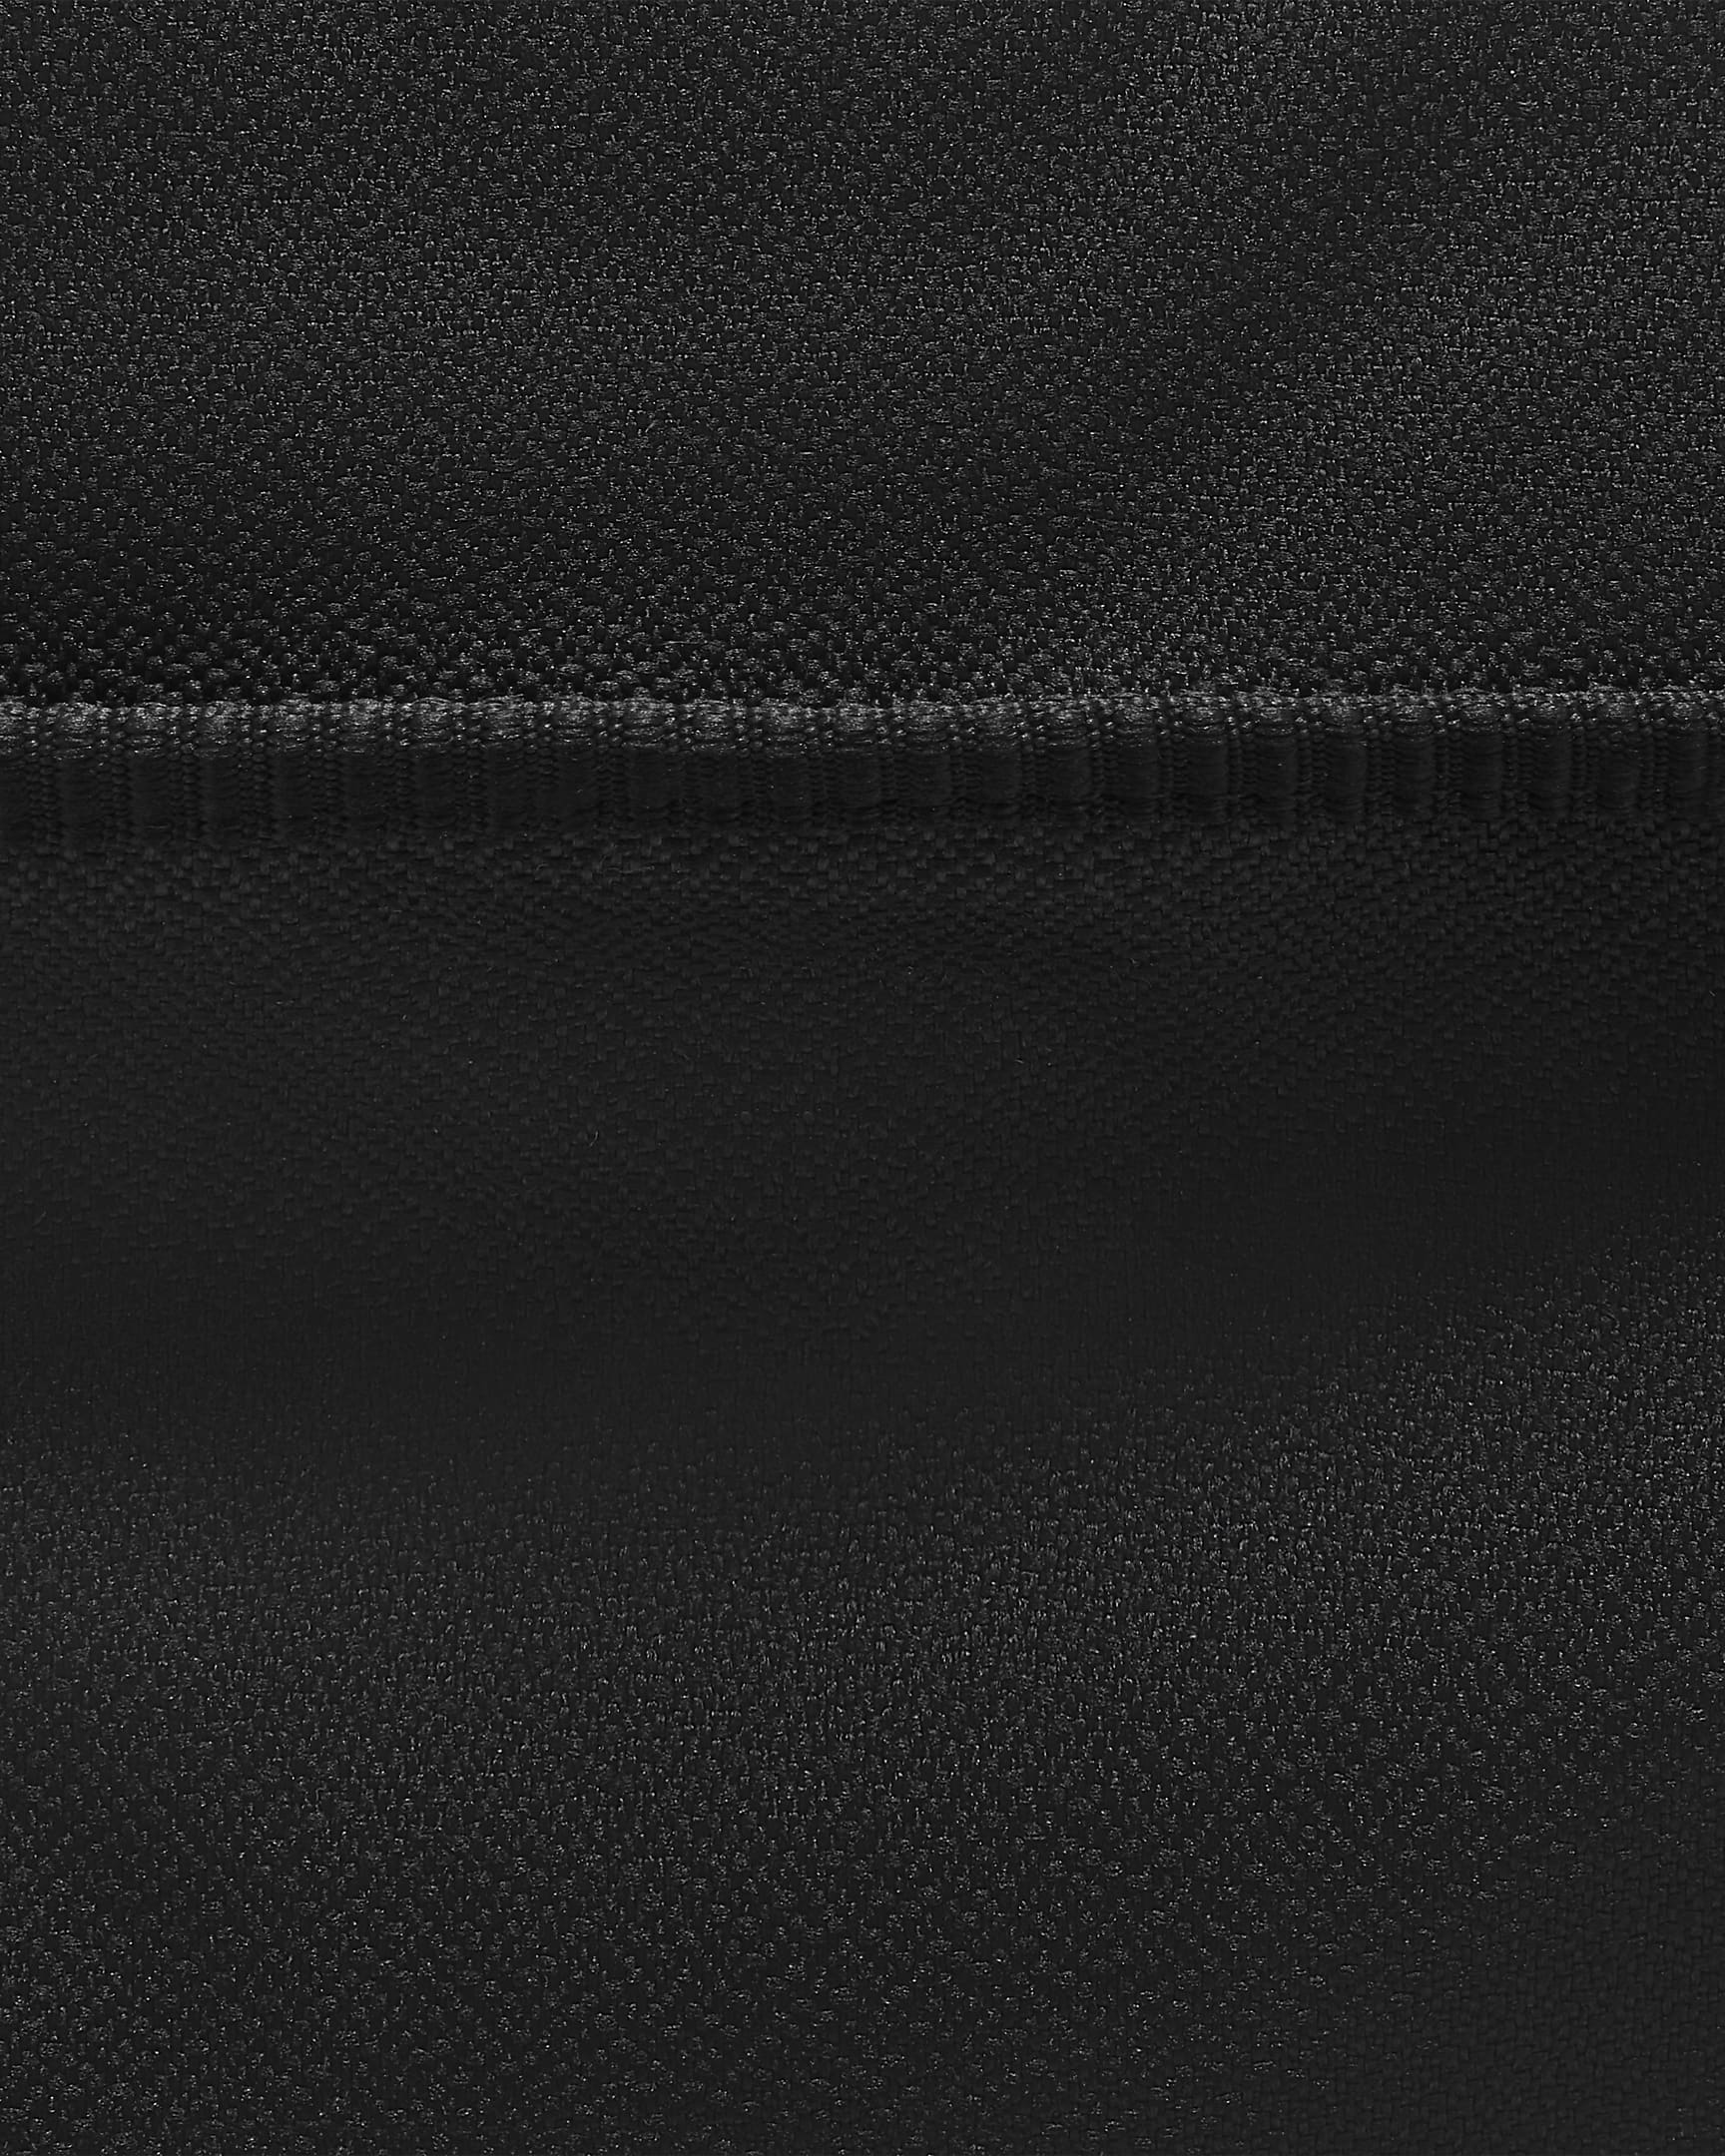 Nike One Club Women's Training Duffel Bag (24L) - Black/Black/White